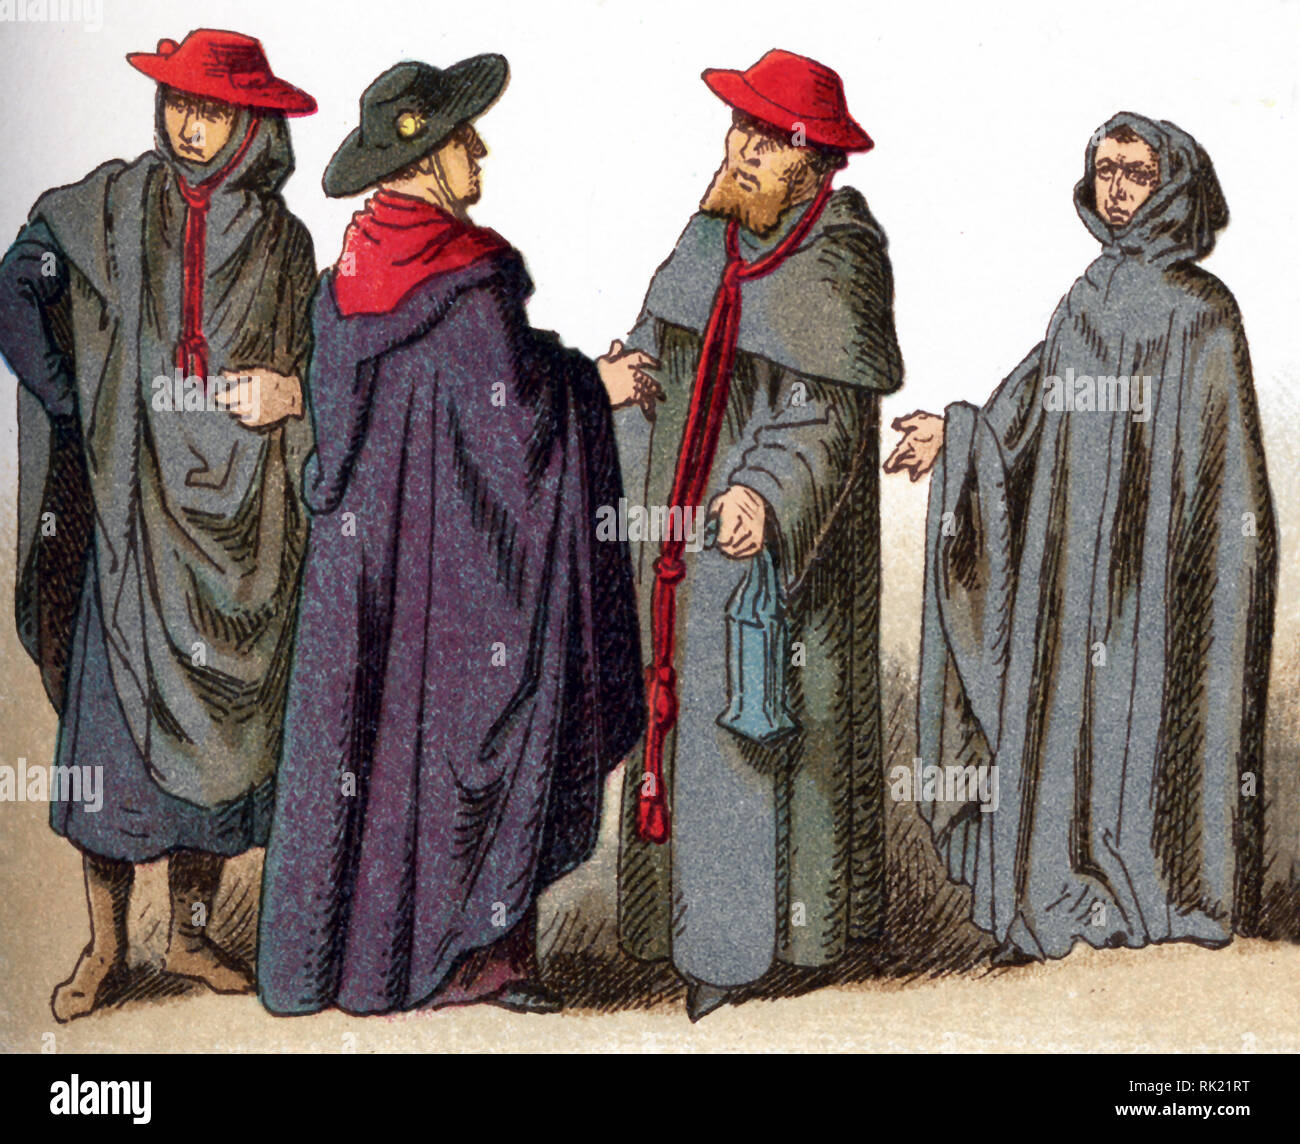 Le illustrazioni riportate di seguito mostrano i costumi ecclesiastici. Essi sono, da sinistra a destra: tre cappelli indossati per uso ordinario da vescovi e cardinali e un cappuccio indossato per i funerali nelle solennità. L'illustrazione risale al 1882. Foto Stock